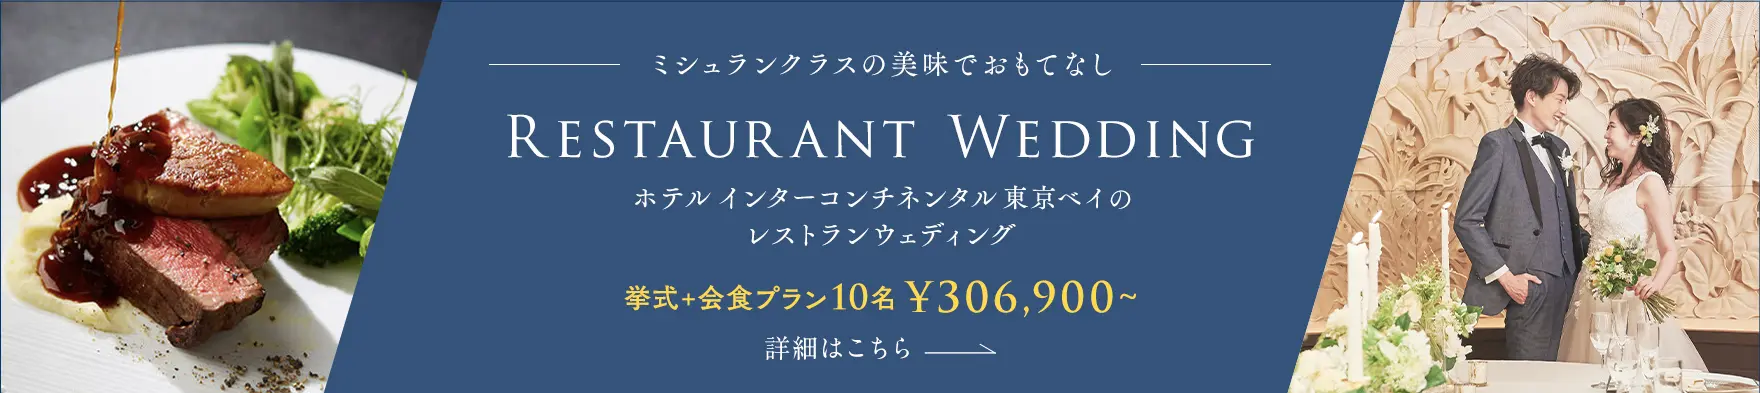 ホテルインターコンチネンタル東京ベイのレストランウェディング